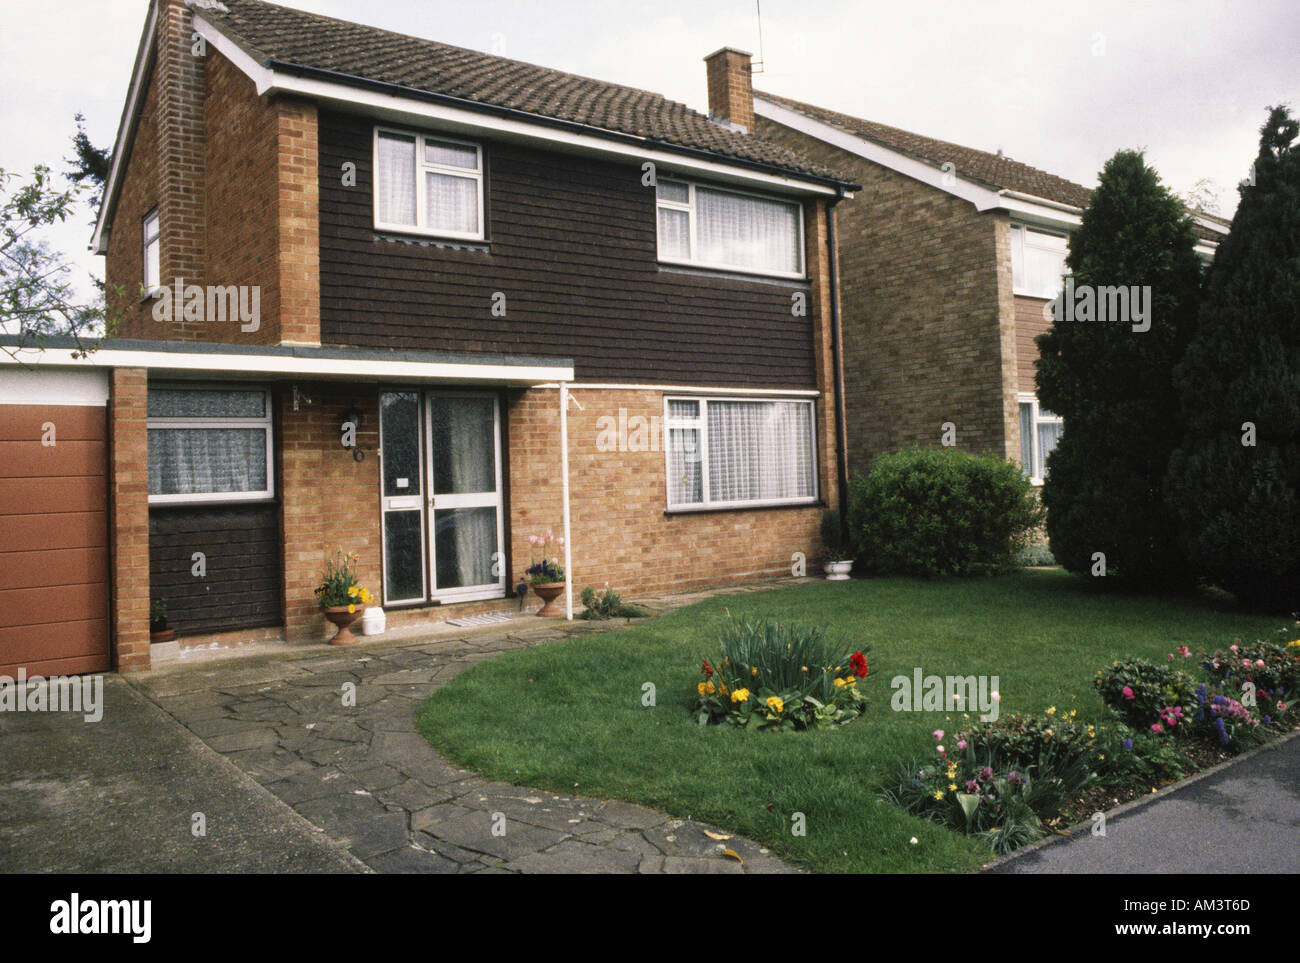 MAIDENHEAD Inglaterra casas típicas de los 1970s Foto de stock